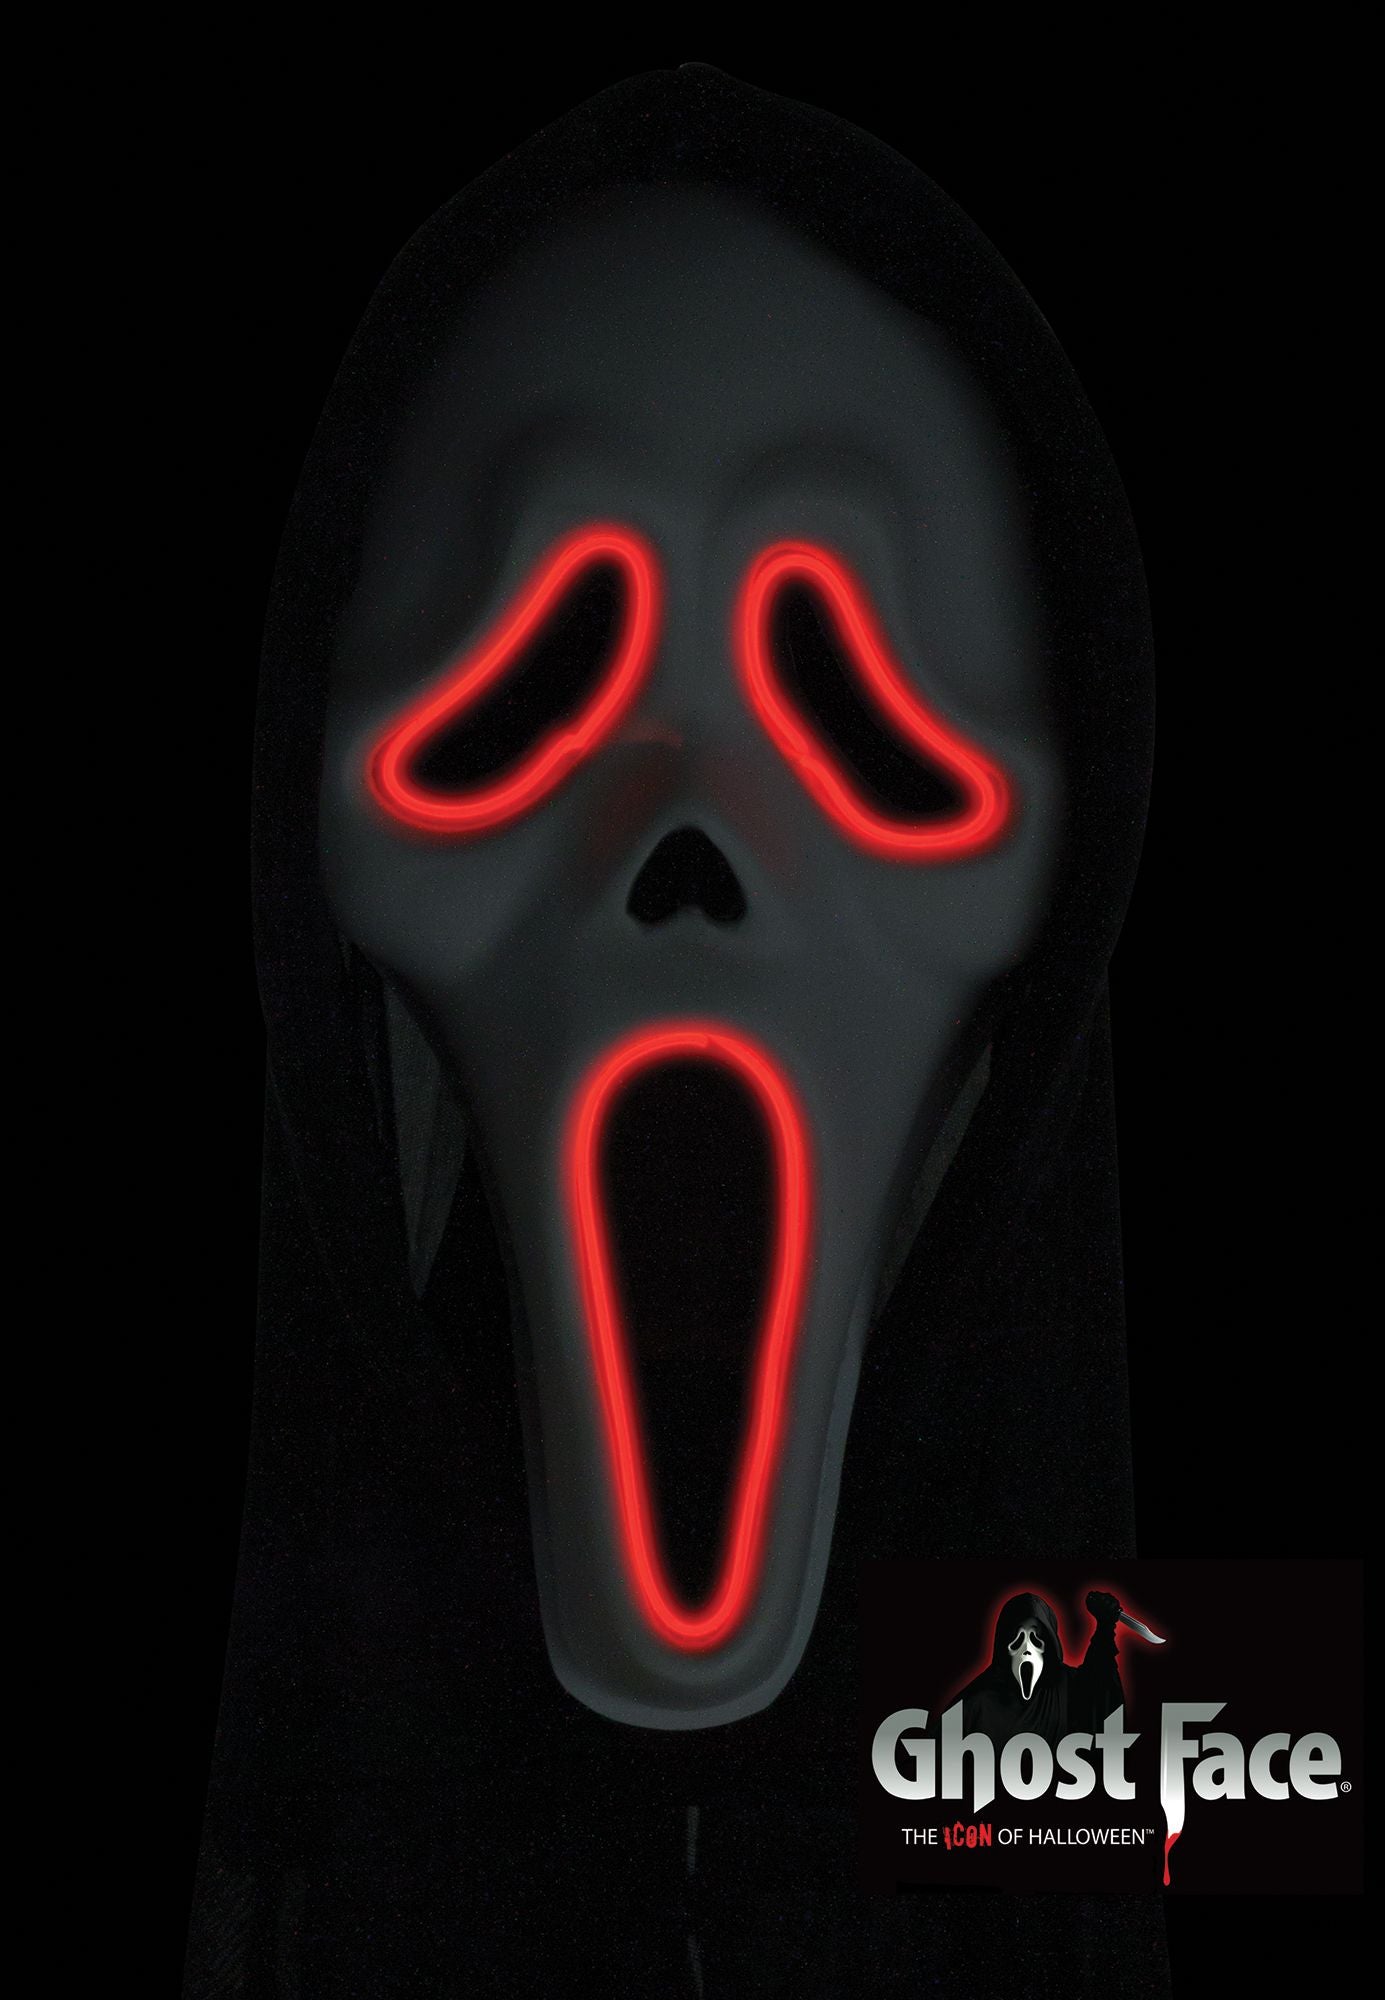 E.L. Ghost Face Costume